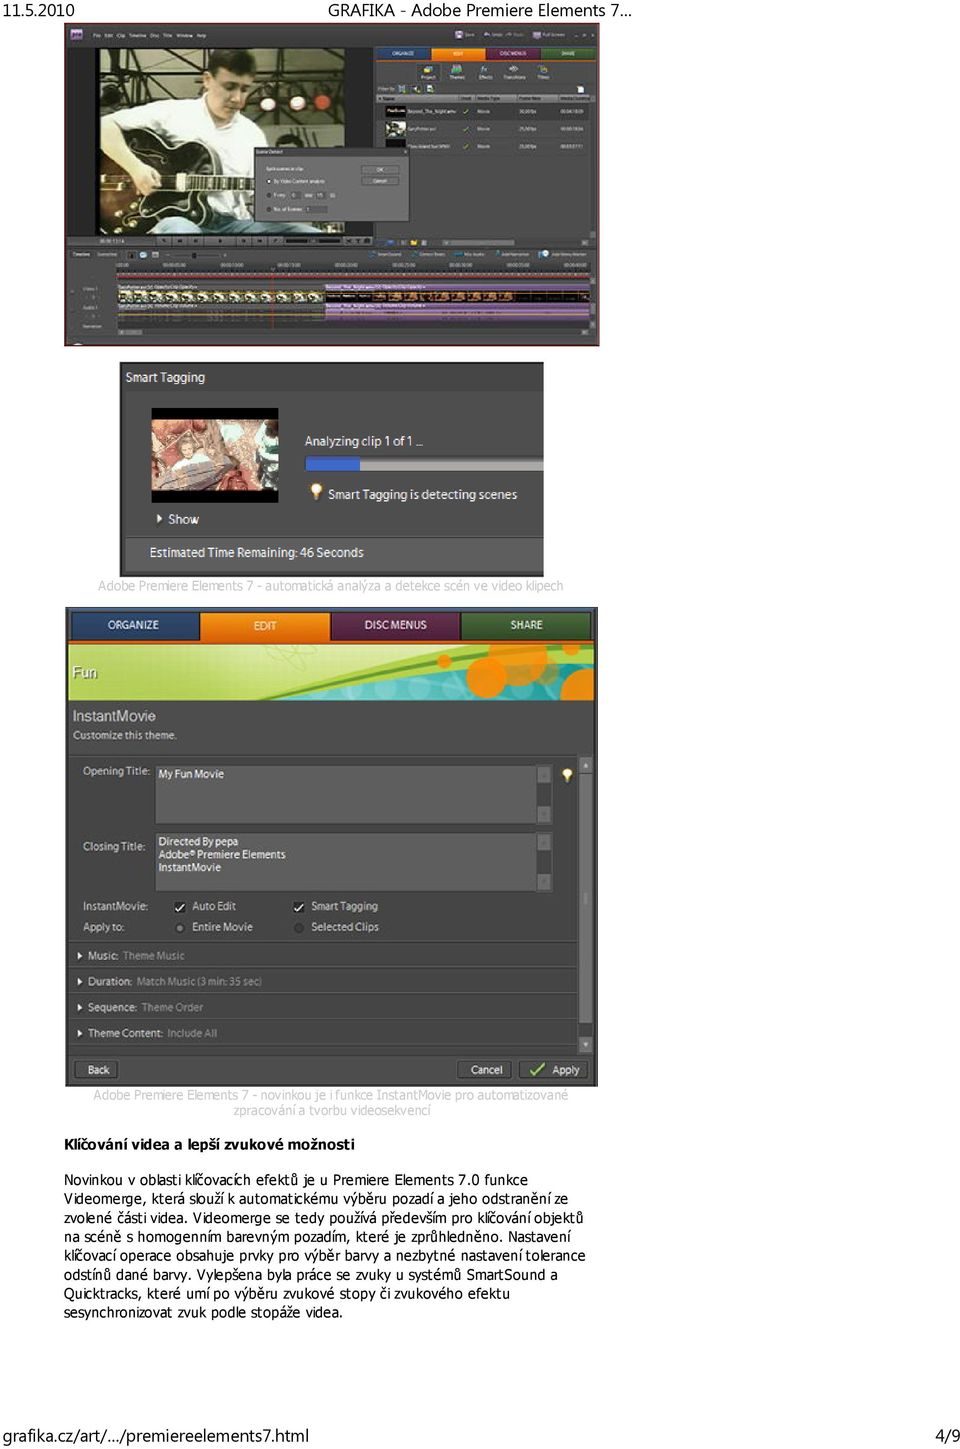 0 funkce Videomerge, která slouží k automatickému výběru pozadí a jeho odstranění ze zvolené části videa.